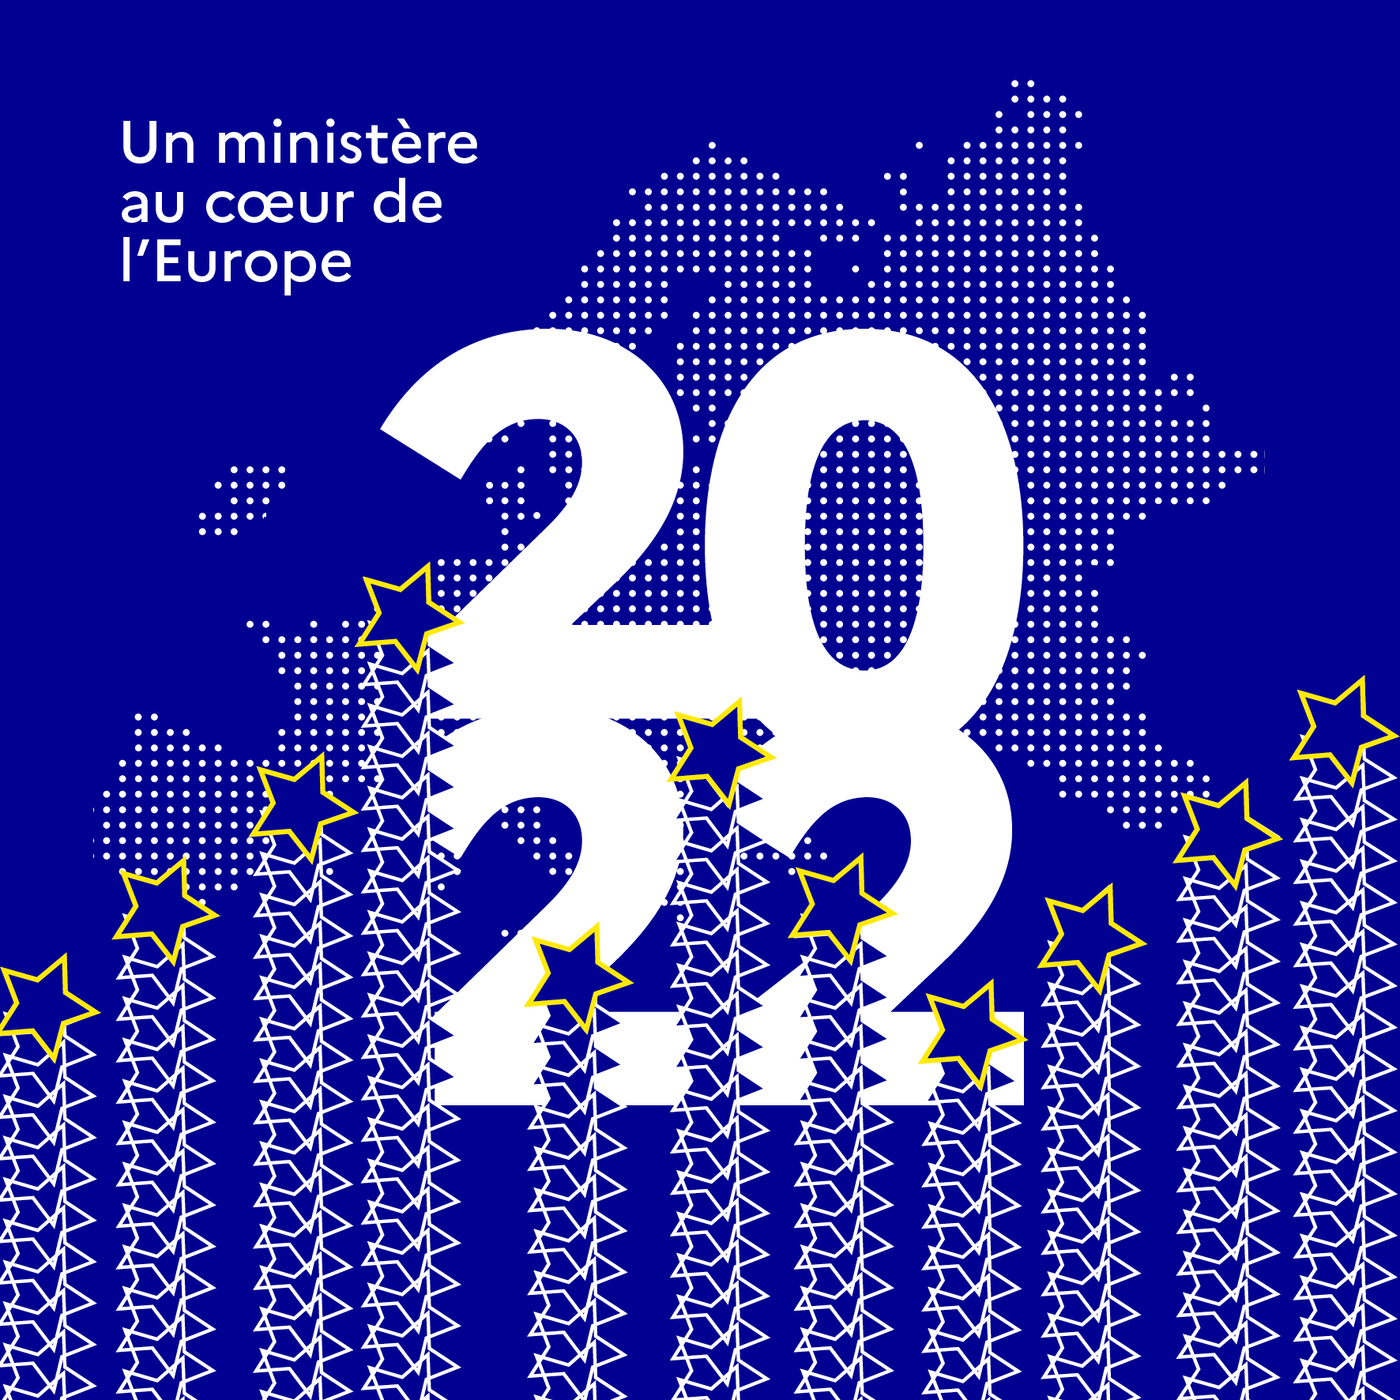 Couverture de la carte de vœux 2022, un ministère au coeur de l'Europe